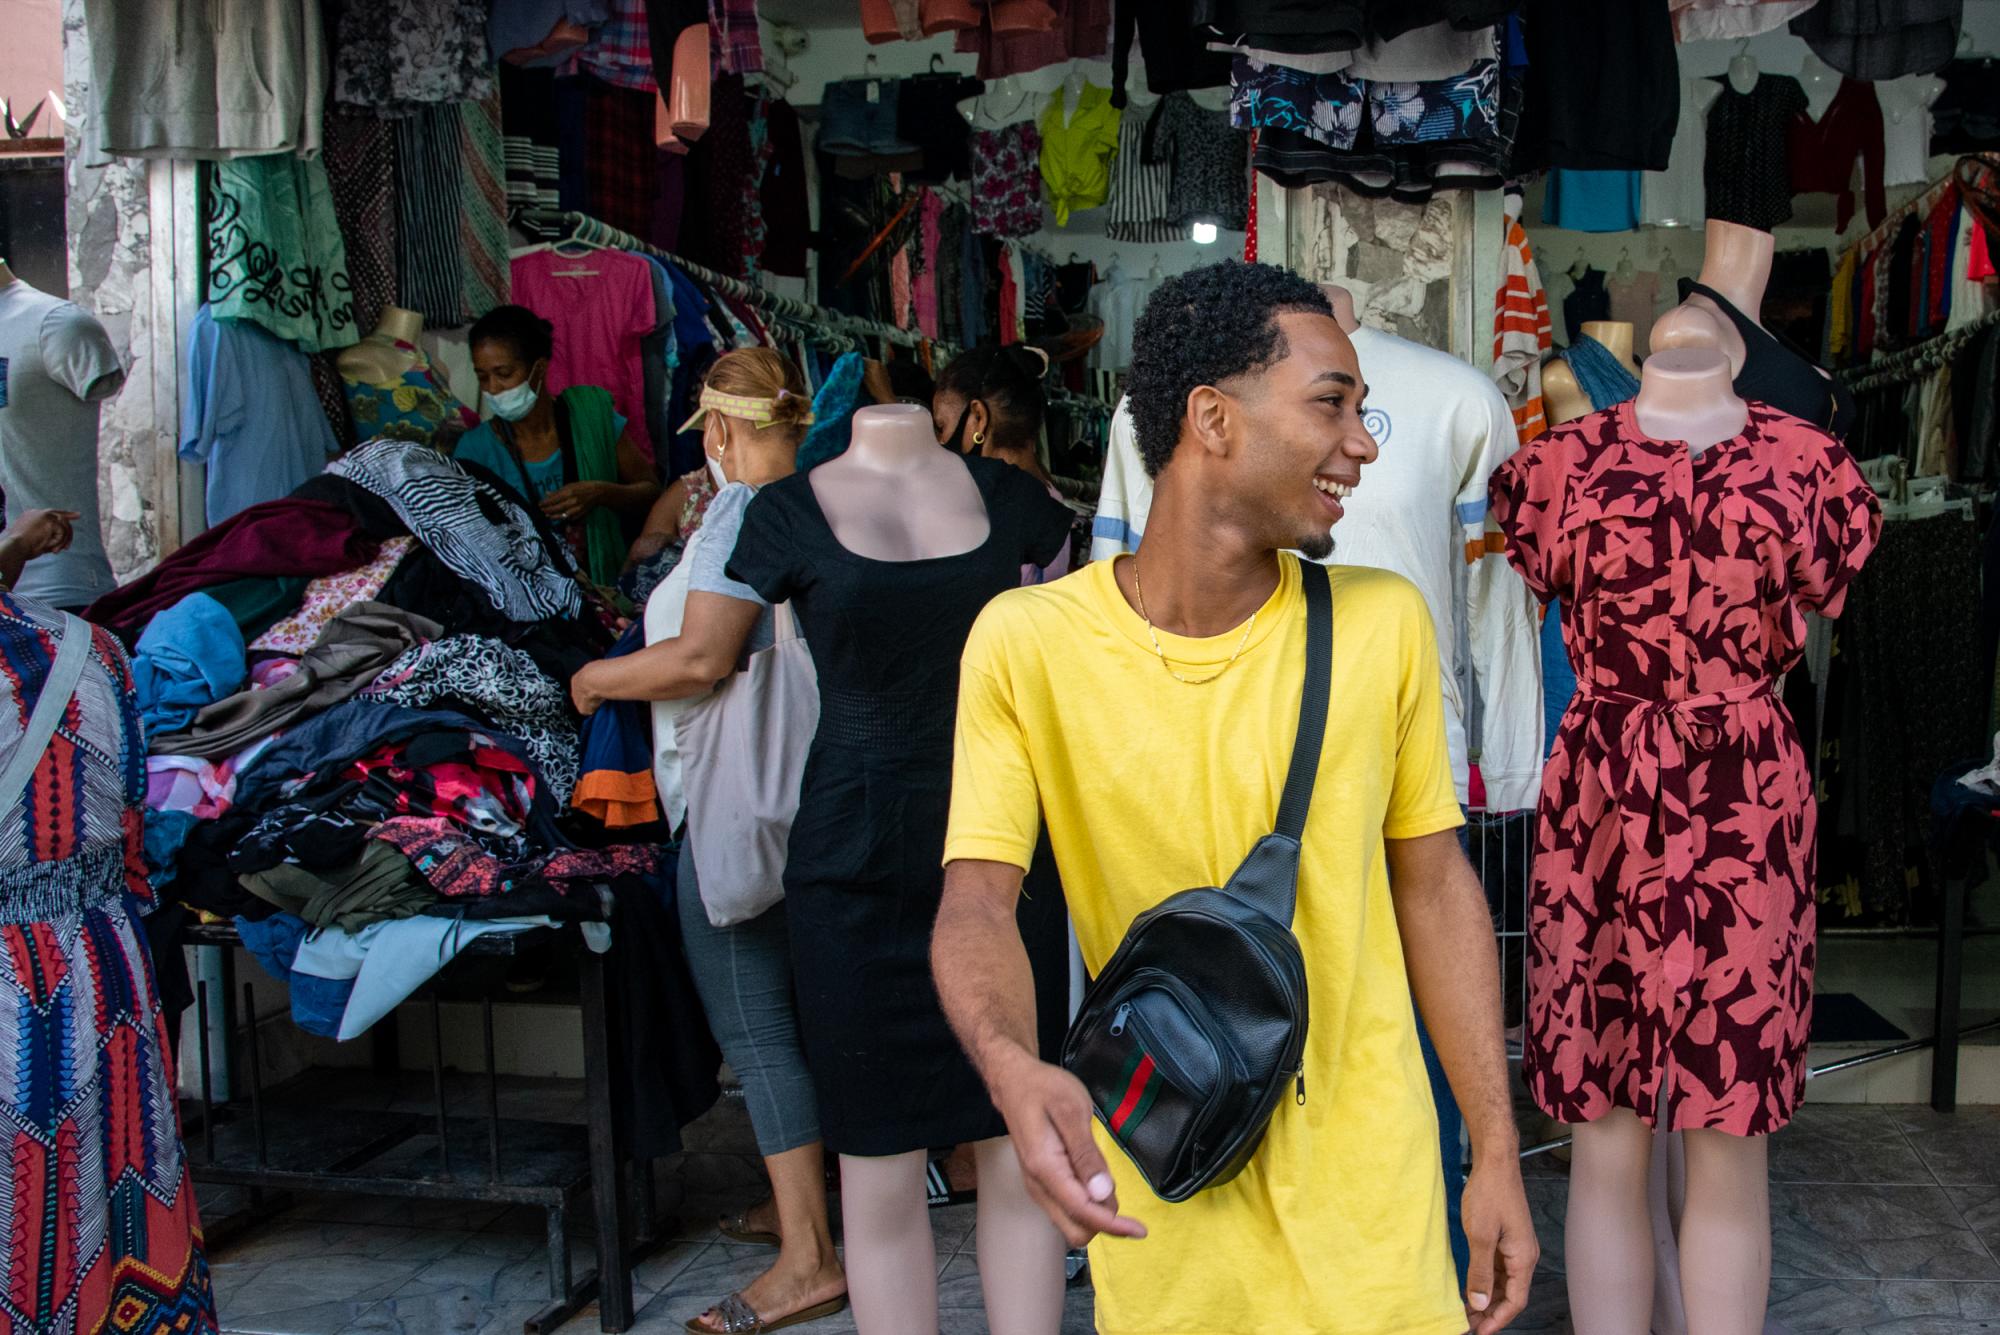 Un joven camina sonriente frente a uno de los comercios en los que se vende ropa de paca (Foto: Juan Miguel Peña)